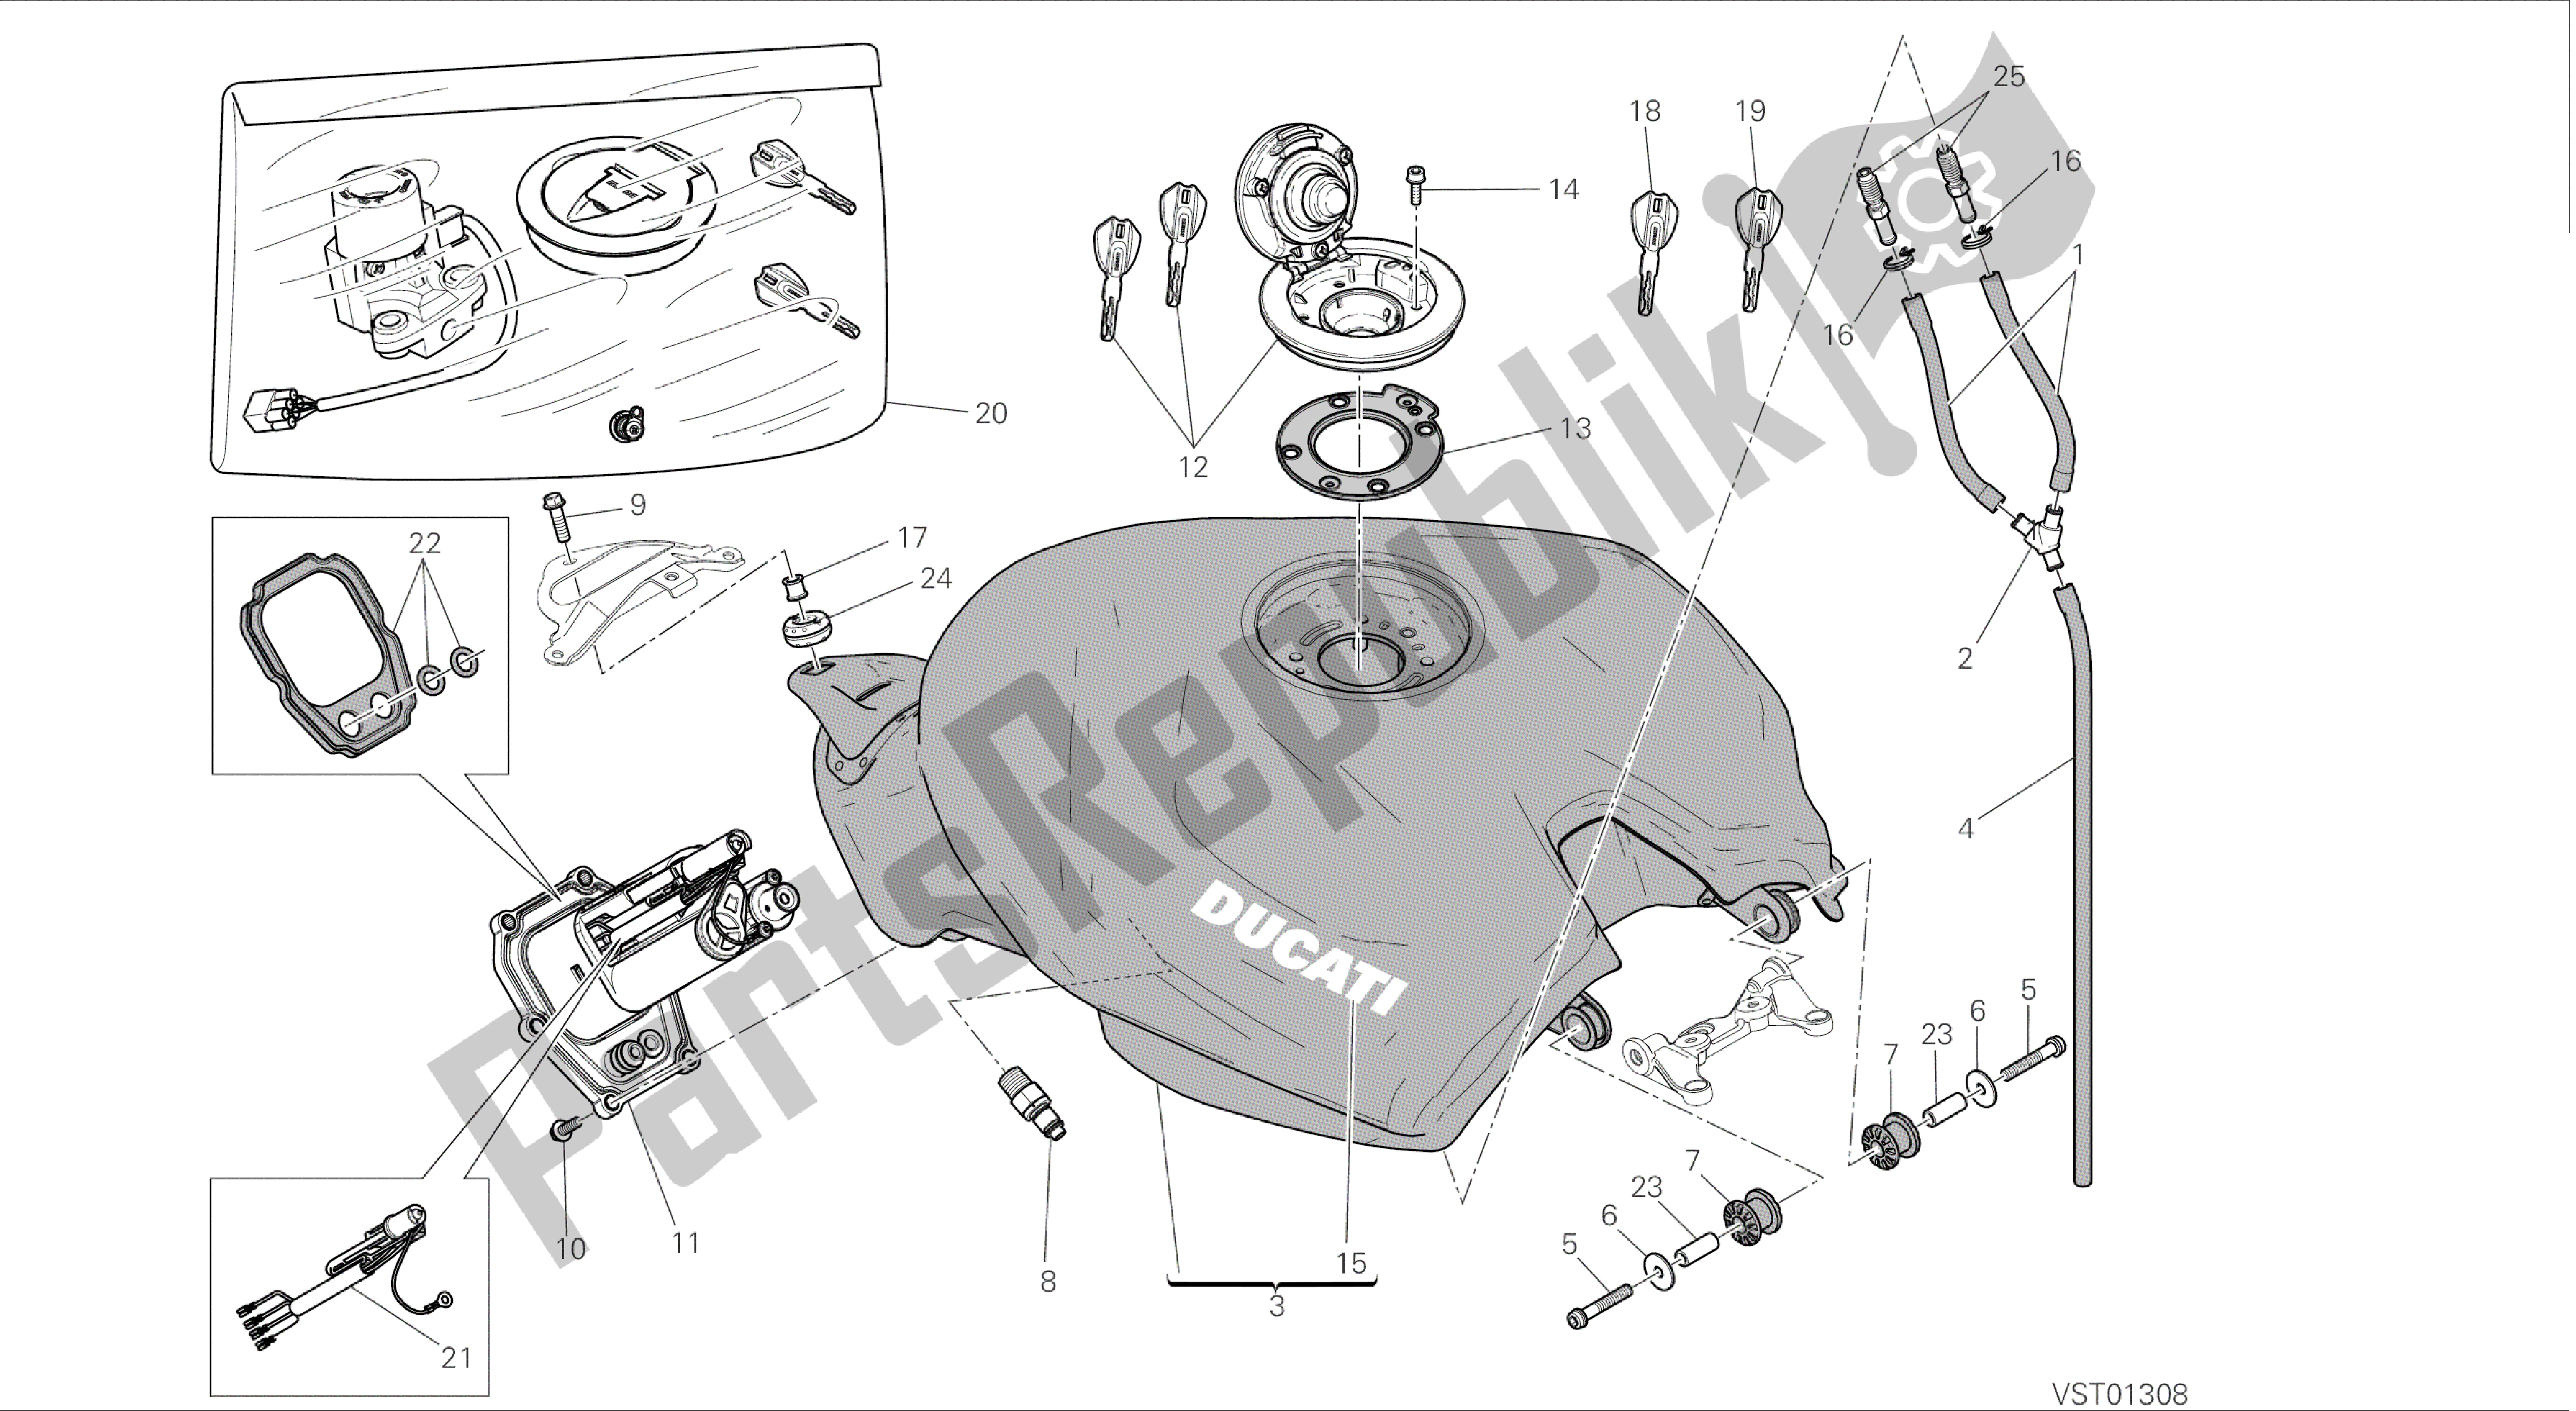 Todas las partes para Dibujo 032 - Tanque [mod: 899 Abs; Xst: Marco De Grupo Aus, Eur, Fra, Jap] de Ducati Panigale 899 2014